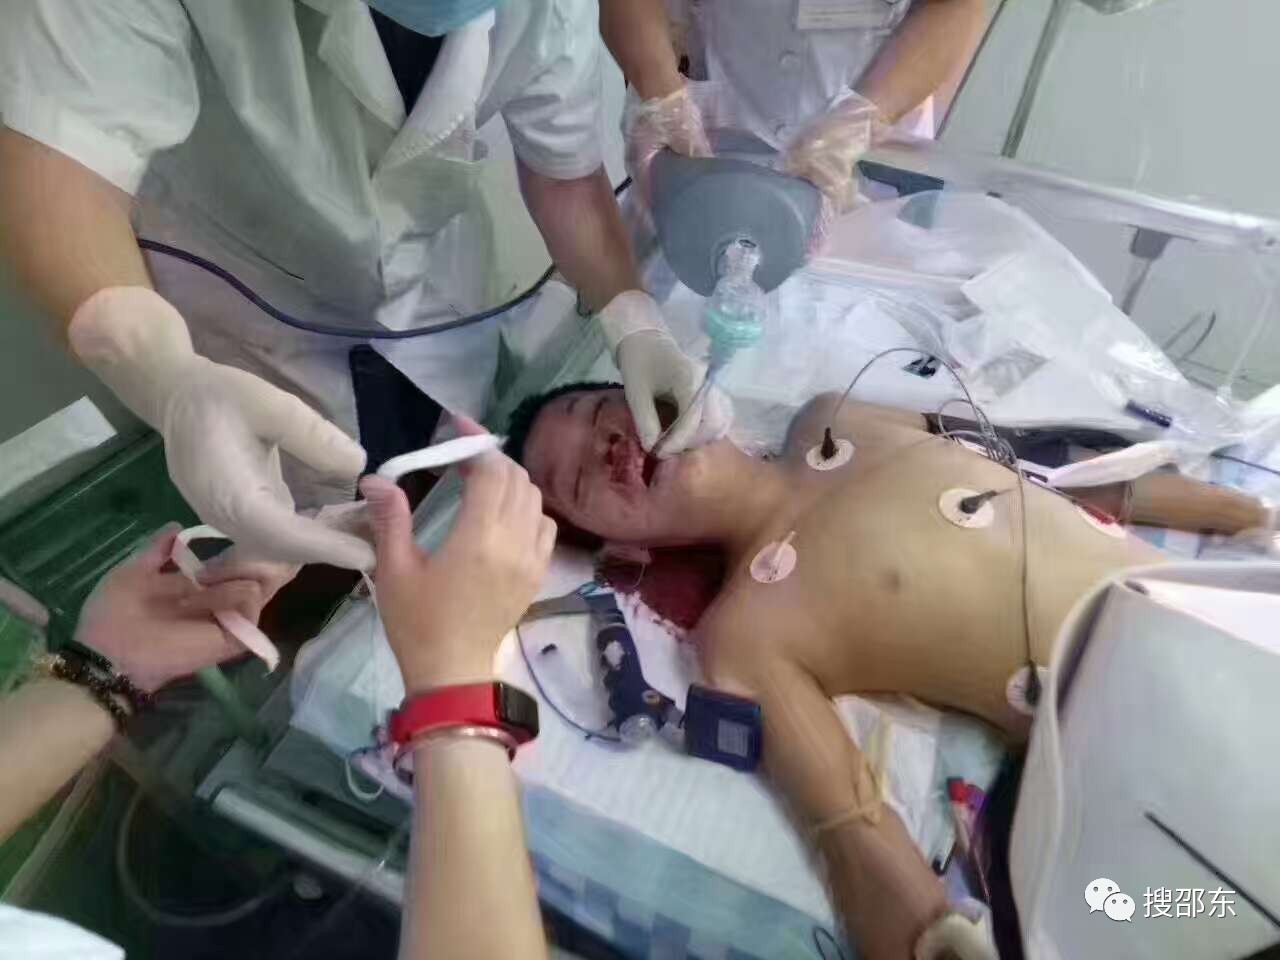 小男孩正在医院进行抢救小孩妈妈已经赶到医院最后希望这个小男孩早点